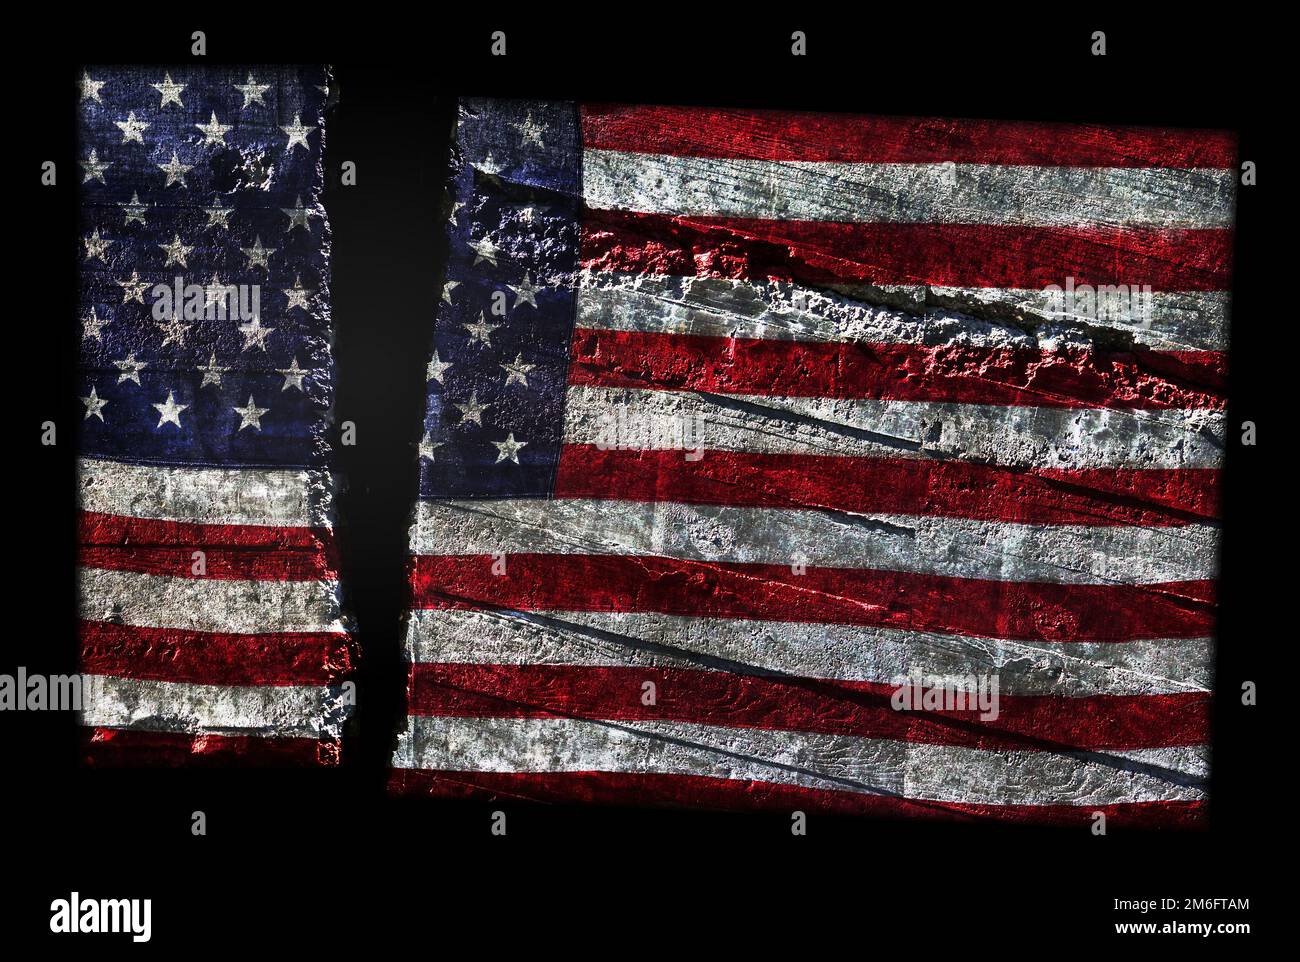 Die verzweifelte US-Flagge wurde in zwei Teile geteilt und repräsentiert die politische Spaltung Amerikas Stockfoto